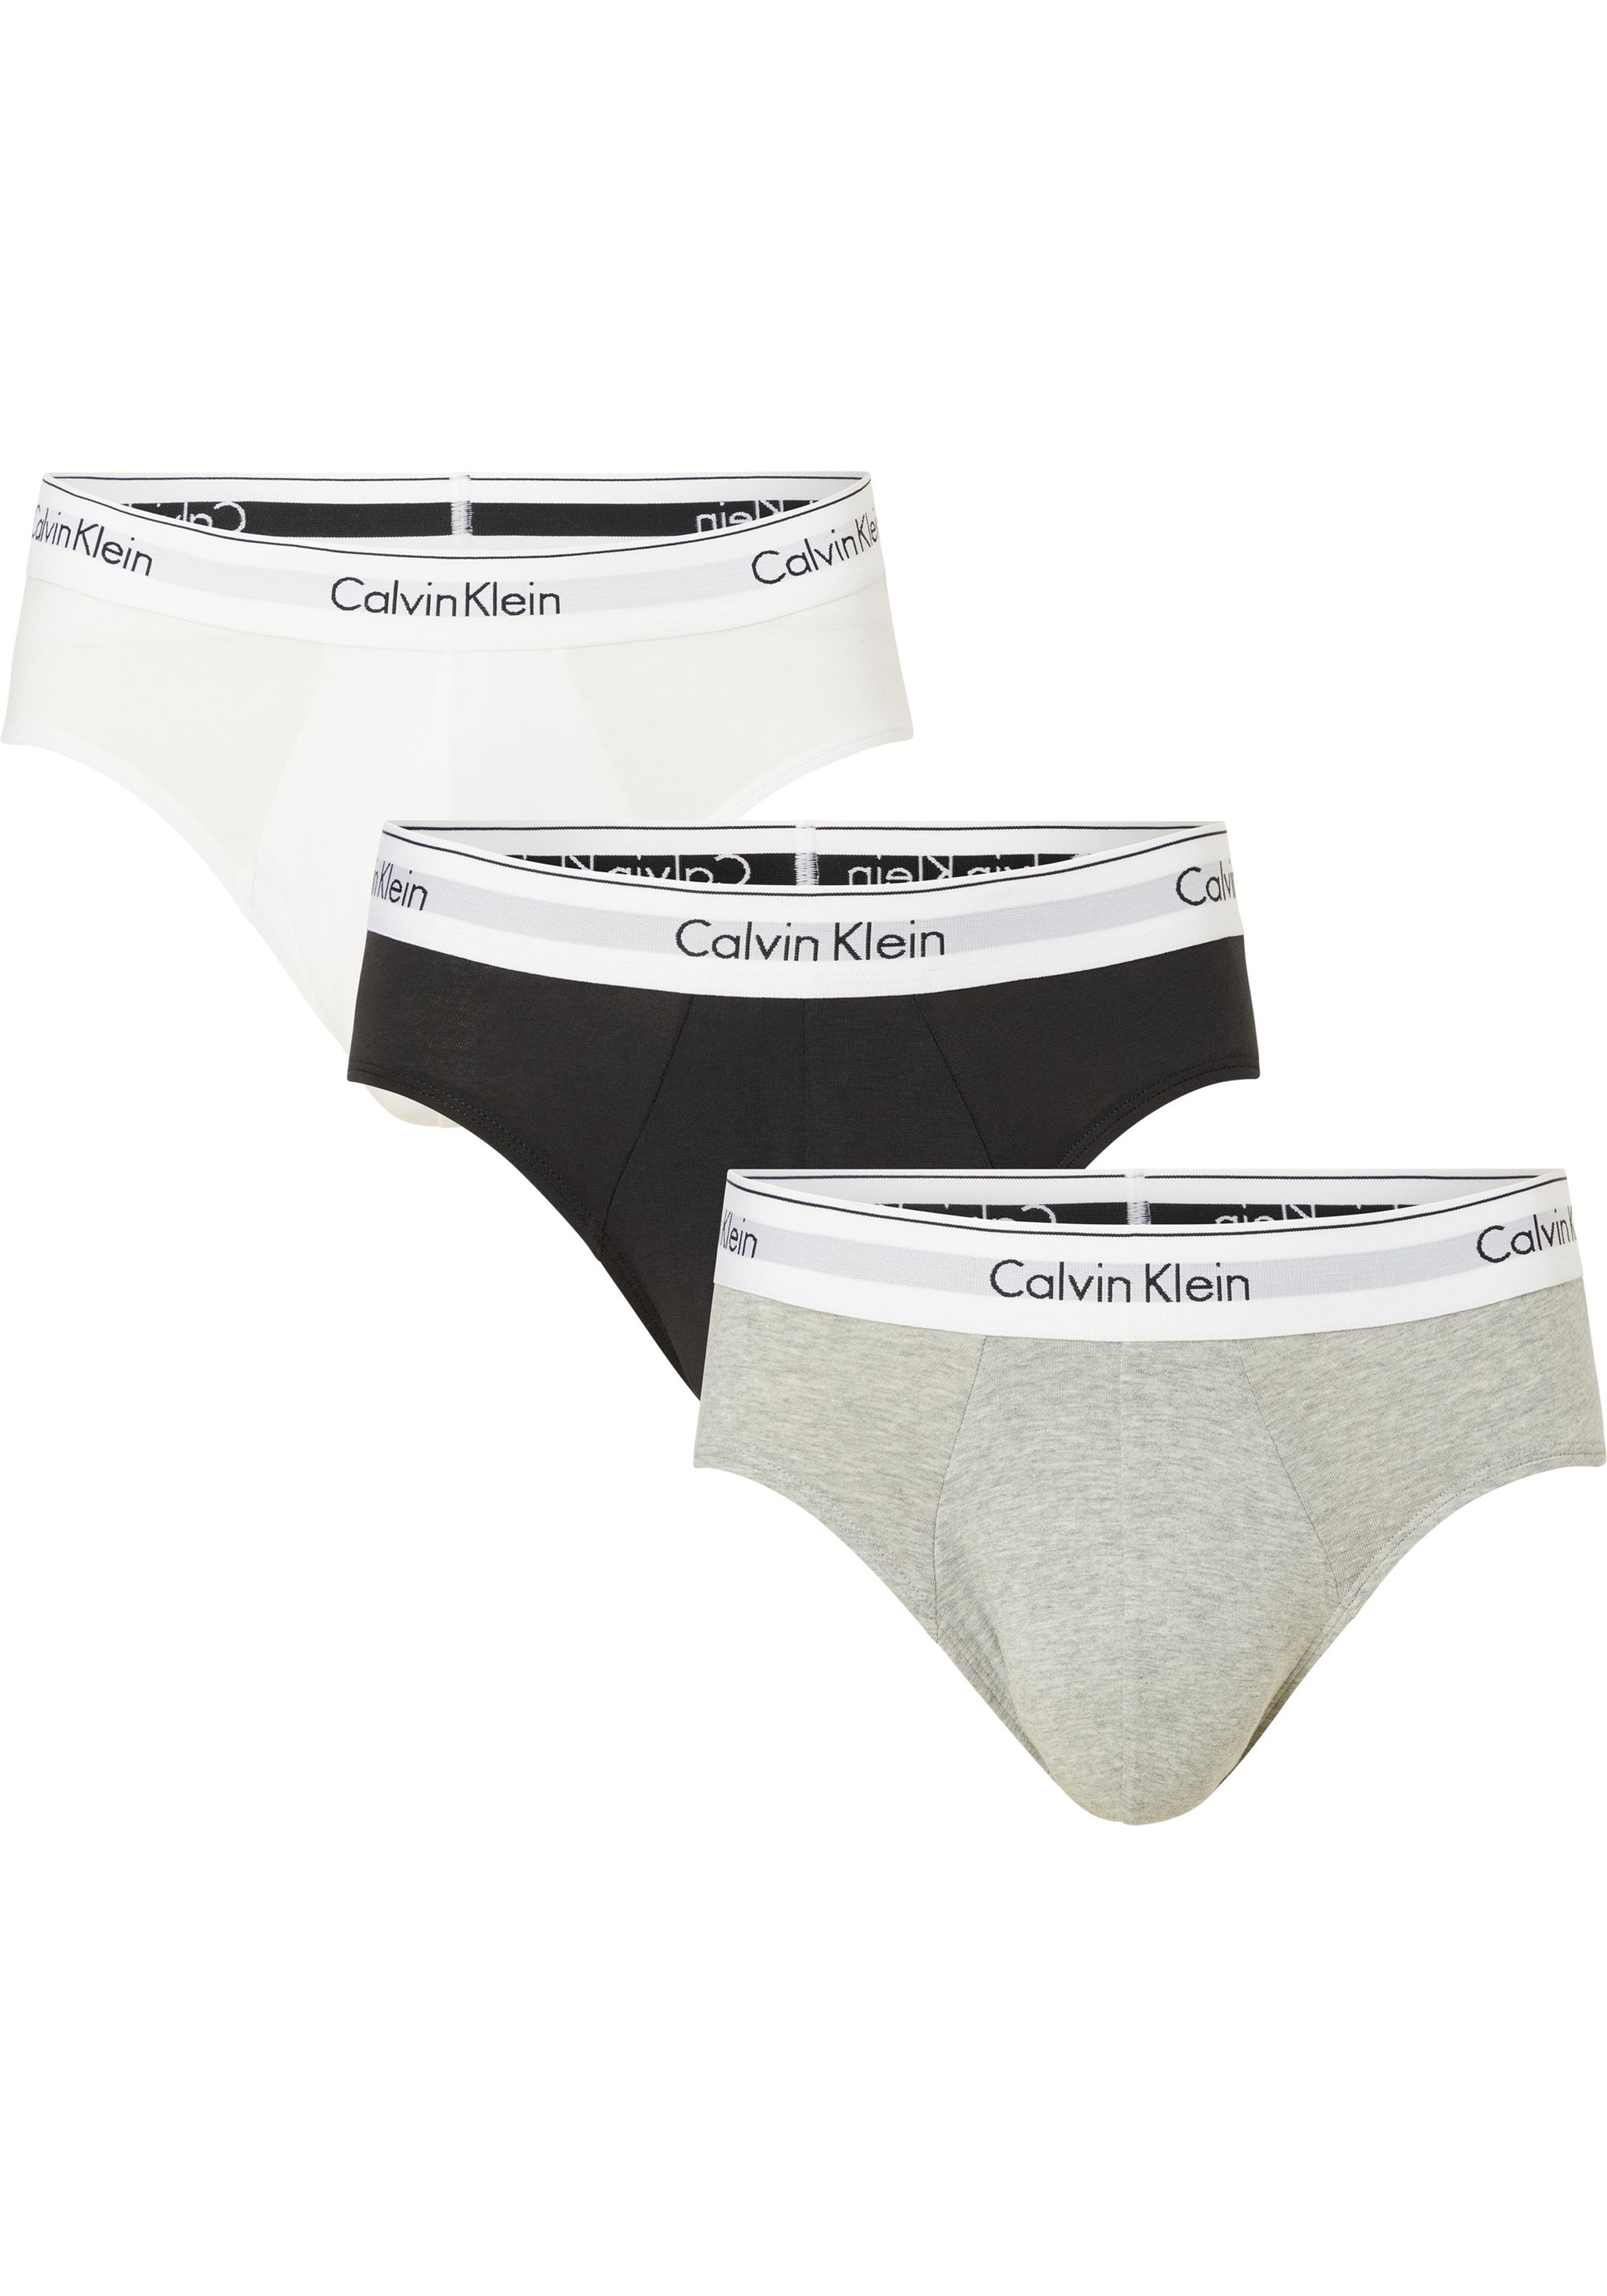 Calvin Klein Hipster Briefs (3-pack), heren slips, zwart, grijs, wit - SALE  met kortingen tot 50%